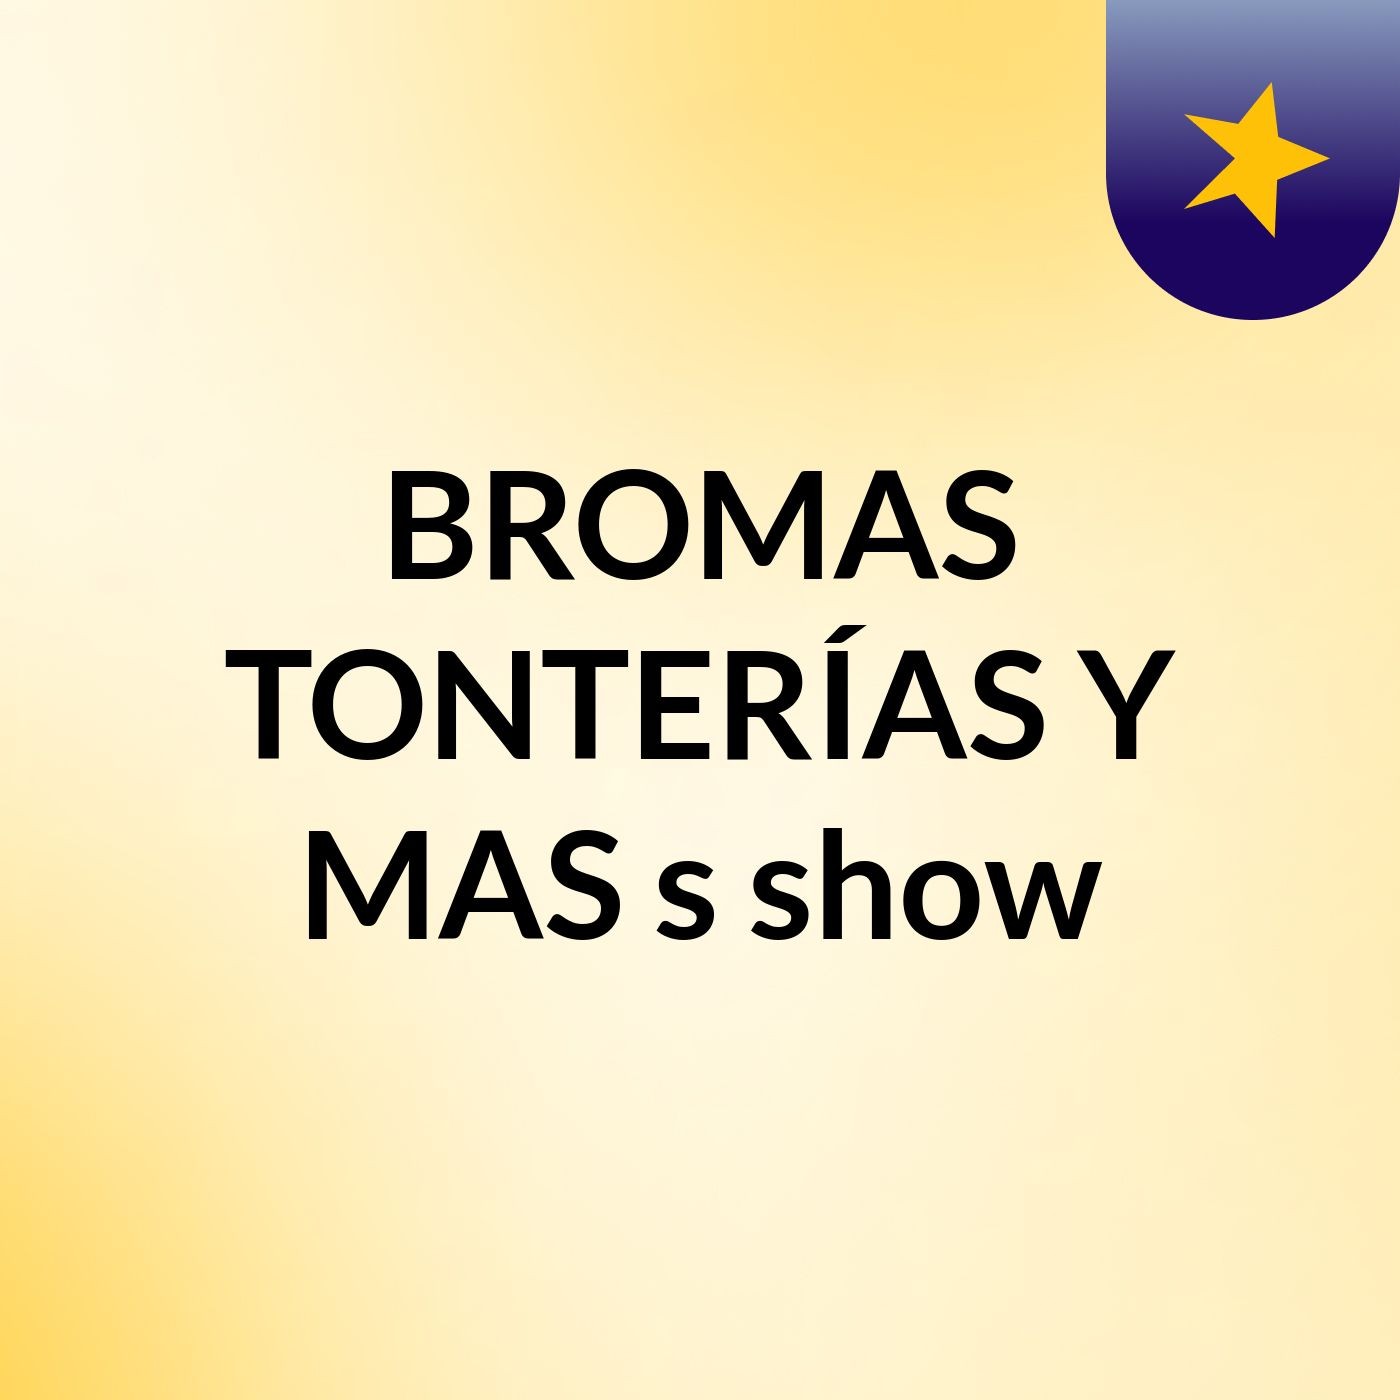 BROMAS TONTERÍAS Y MAS's show